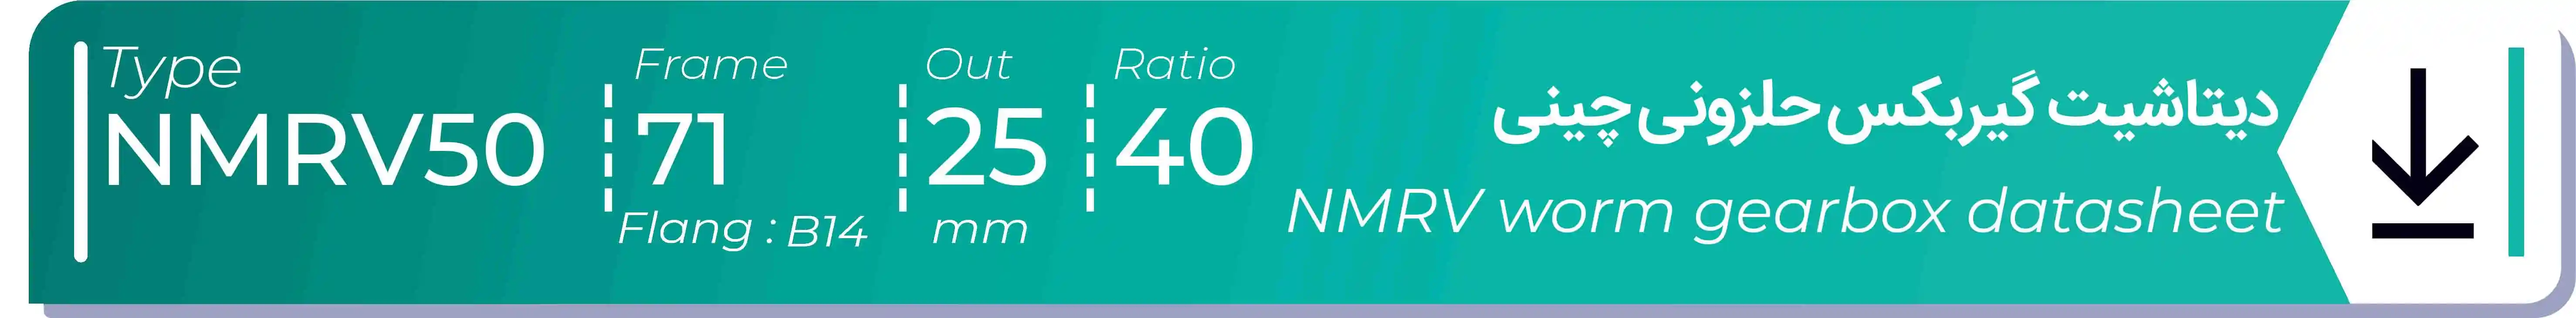  دیتاشیت و مشخصات فنی گیربکس حلزونی چینی   NMRV50  -  با خروجی 25- میلی متر و نسبت40 و فریم 71